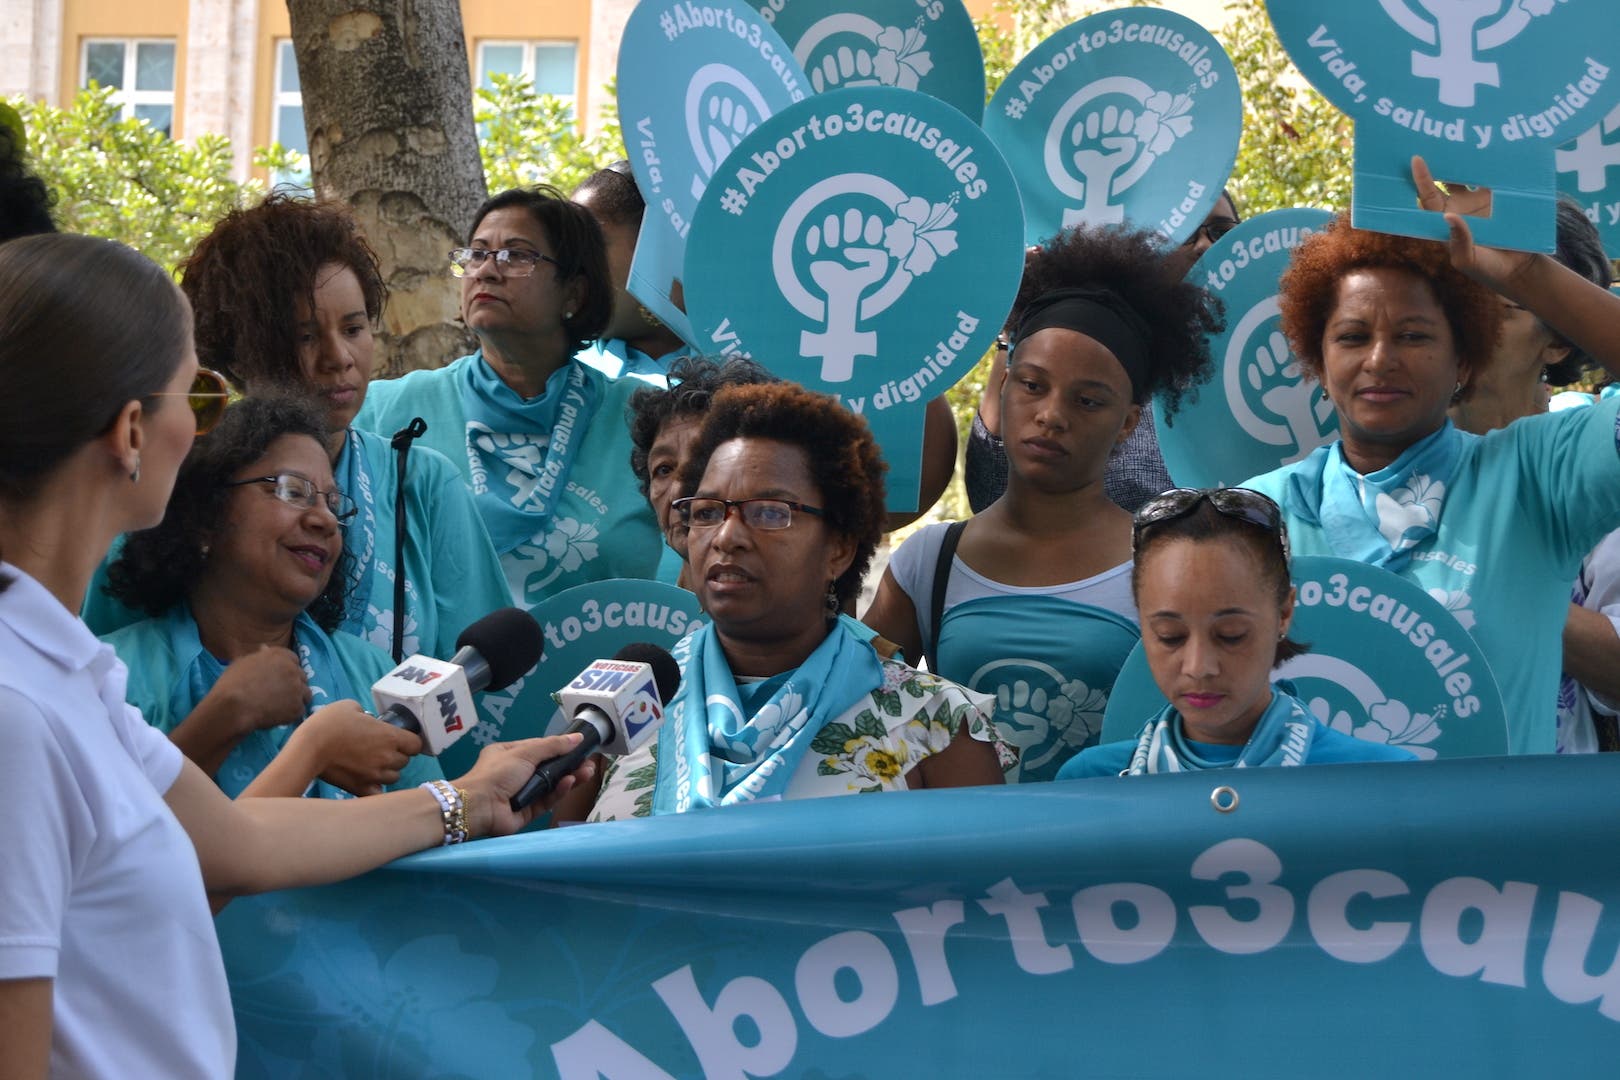 Organizaciones convocan caminata por despenalización del aborto para el próximo domingo